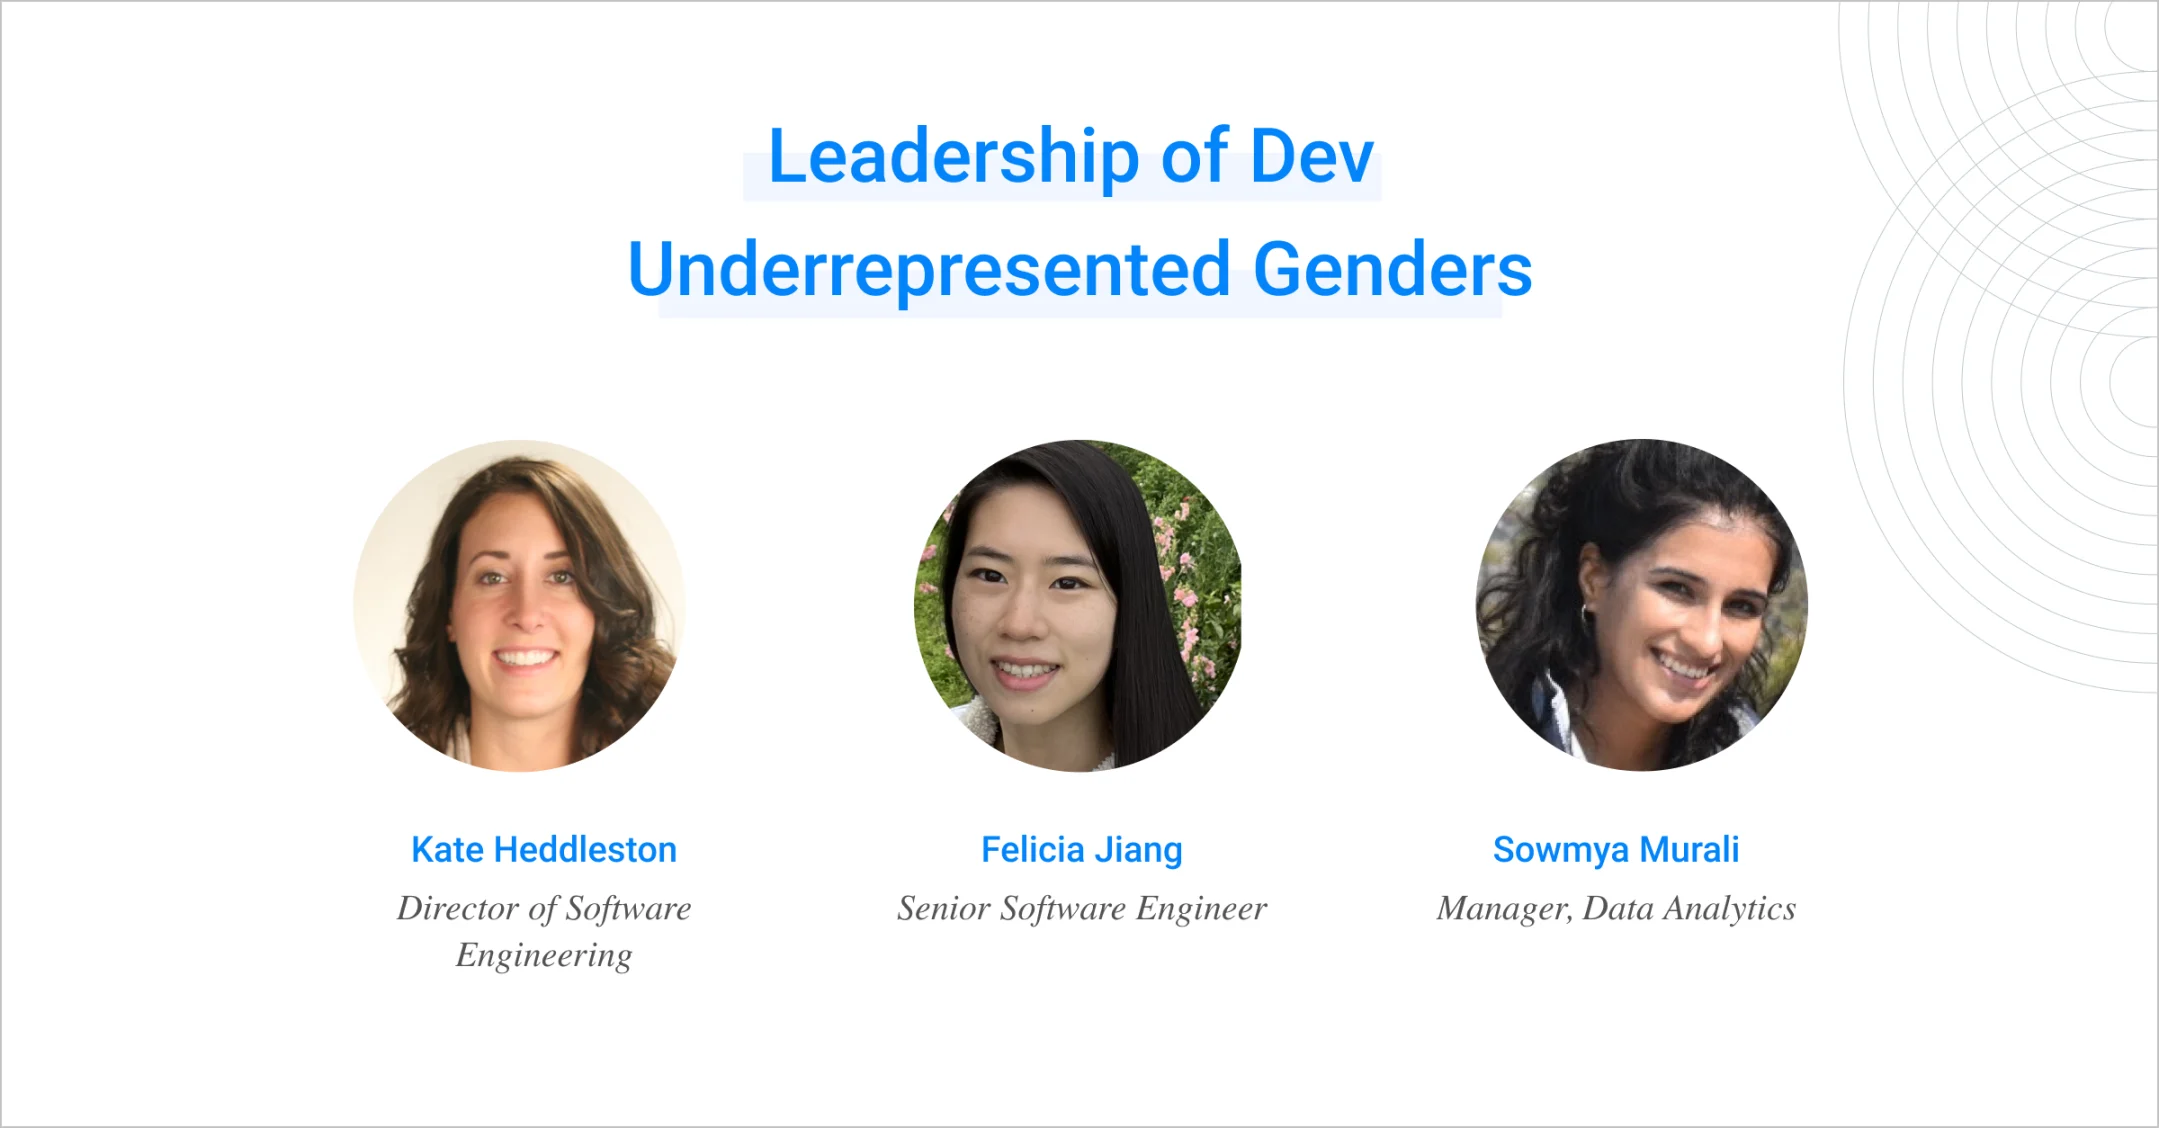 Headshots of the leaders of Underrepresented Genders in Dev group: Kate Heddleston, Felicia Jiang, Sowmya Murali